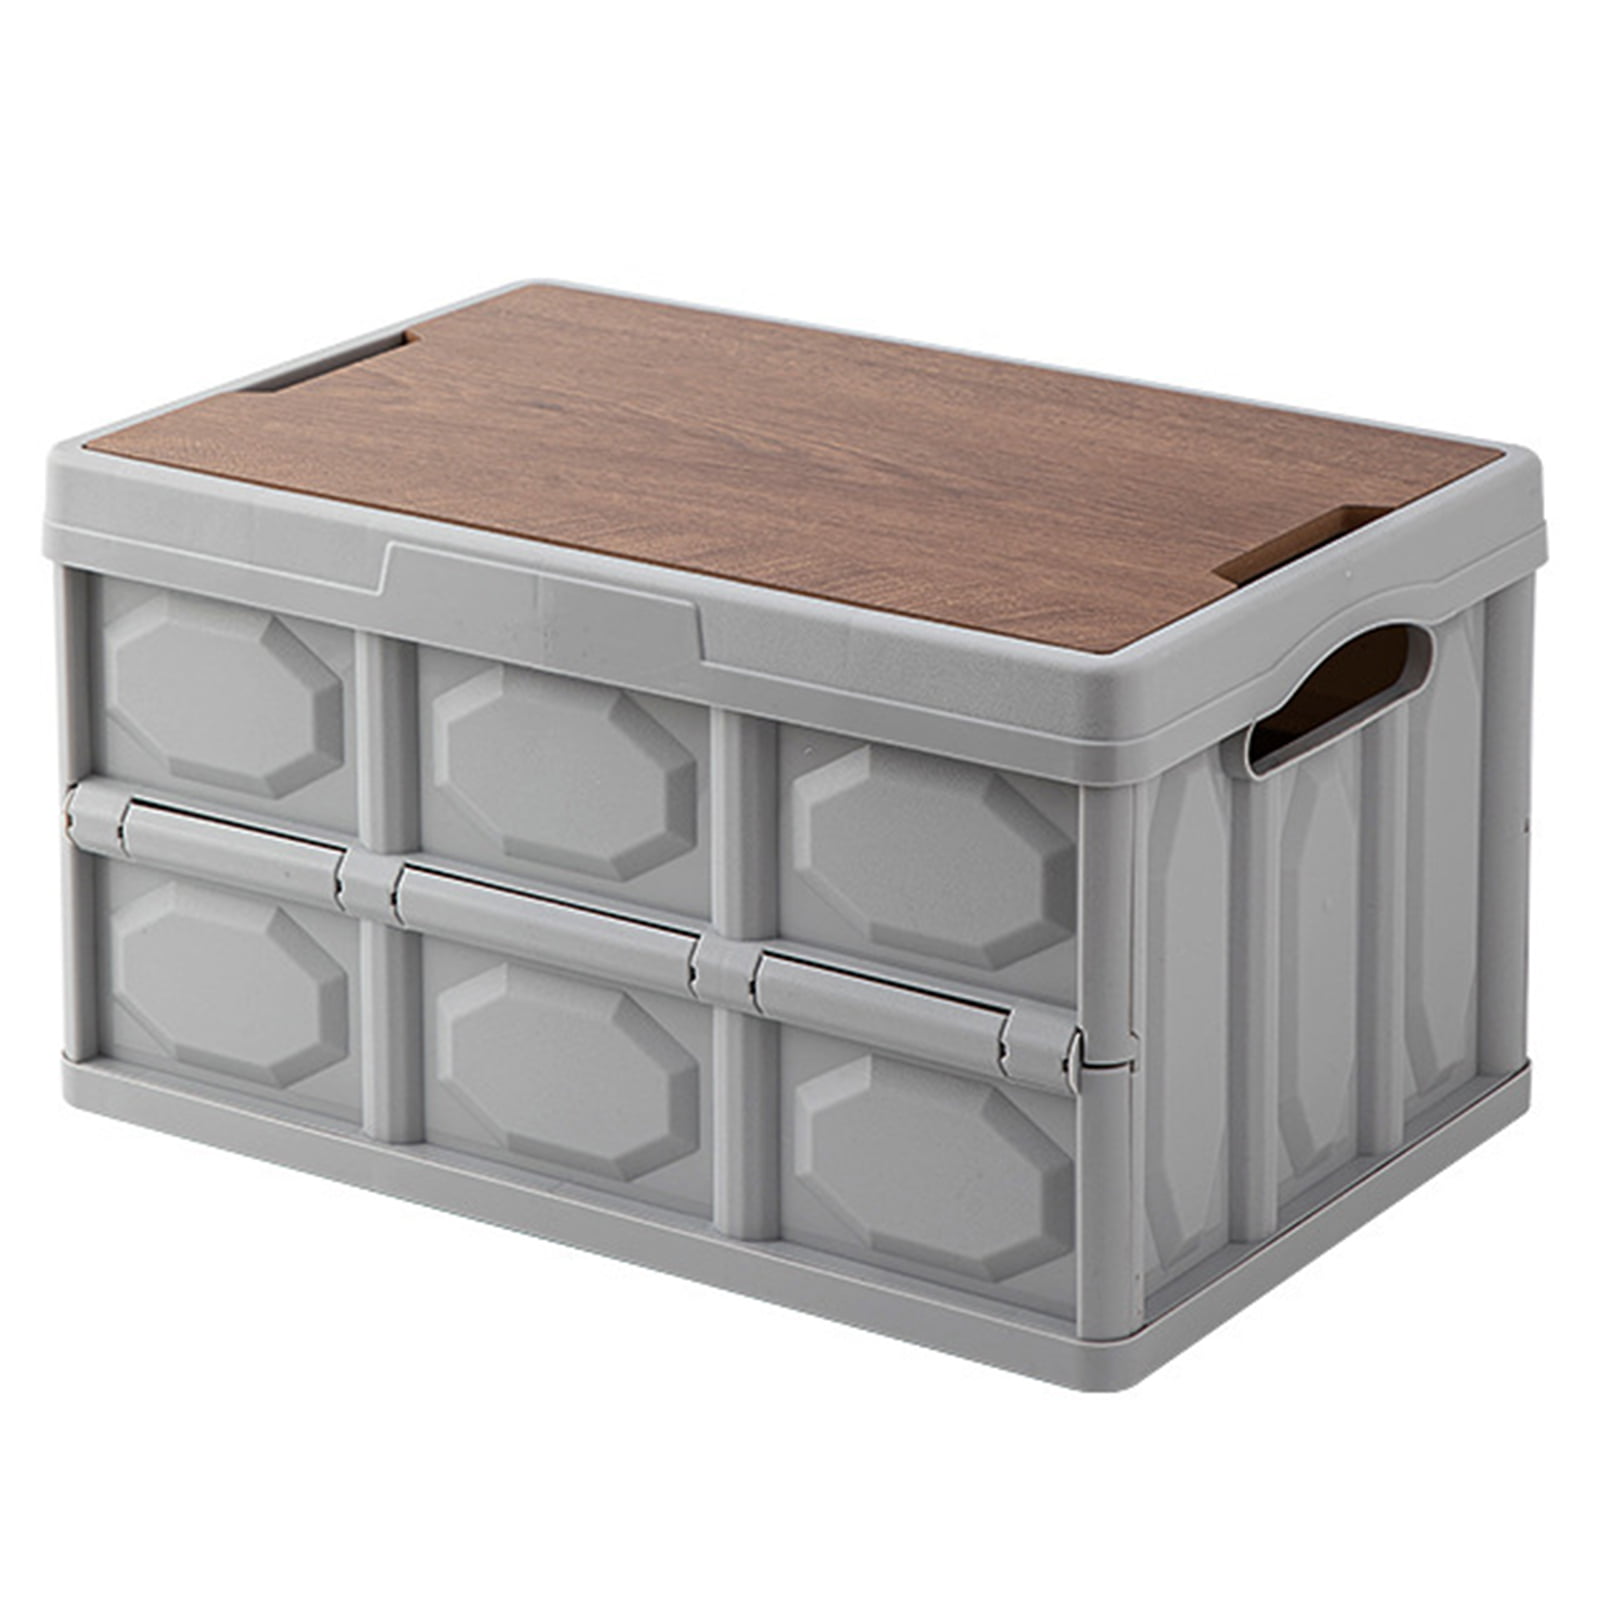 Jiaroswwei Outdoor Folding Box Removable Wooden Board Top Lid